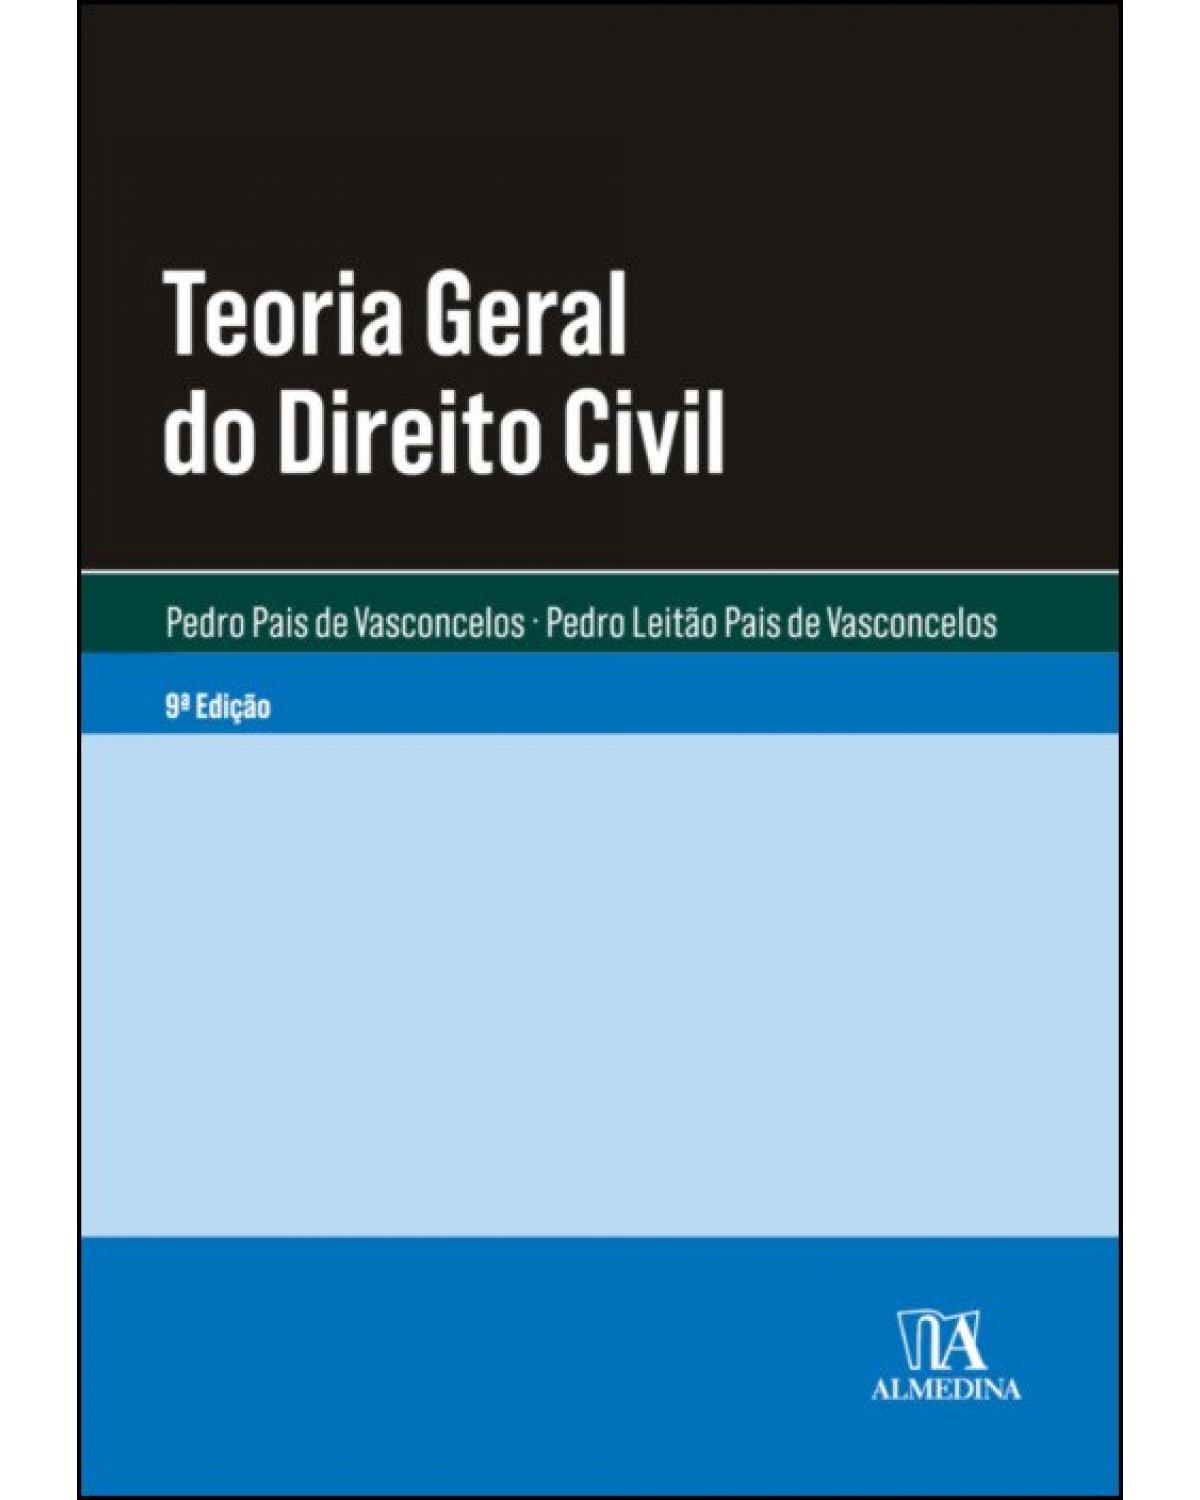 Teoria geral do direito civil - 9ª Edição | 2019